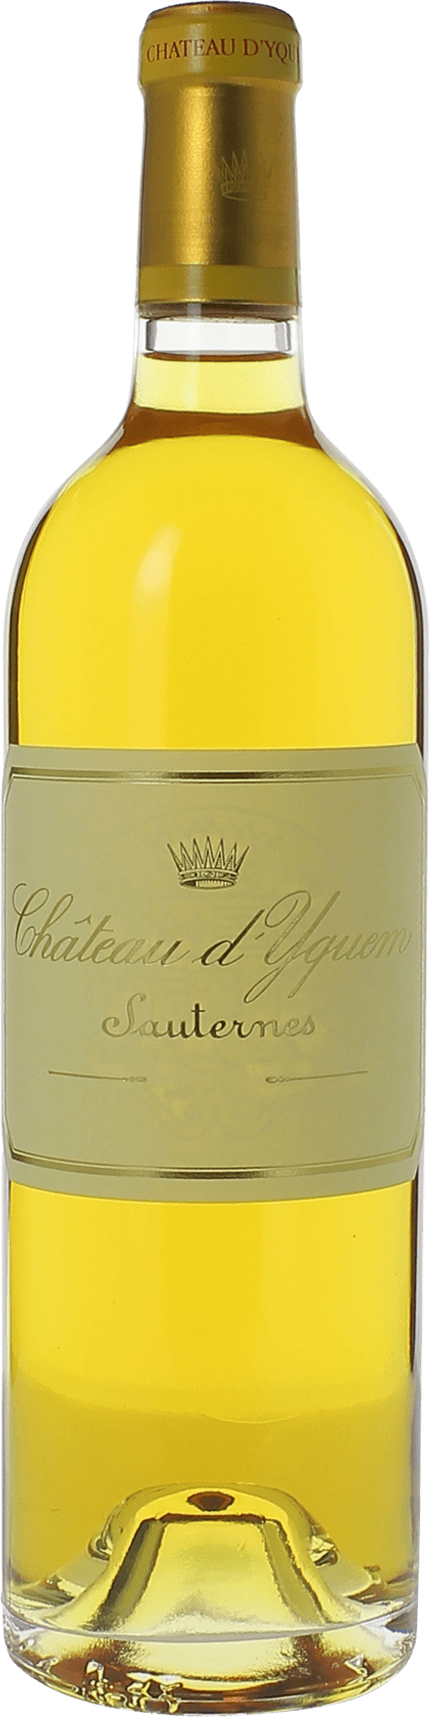 Yquem 1991 1er Grand cru class Sauternes, Bordeaux blanc